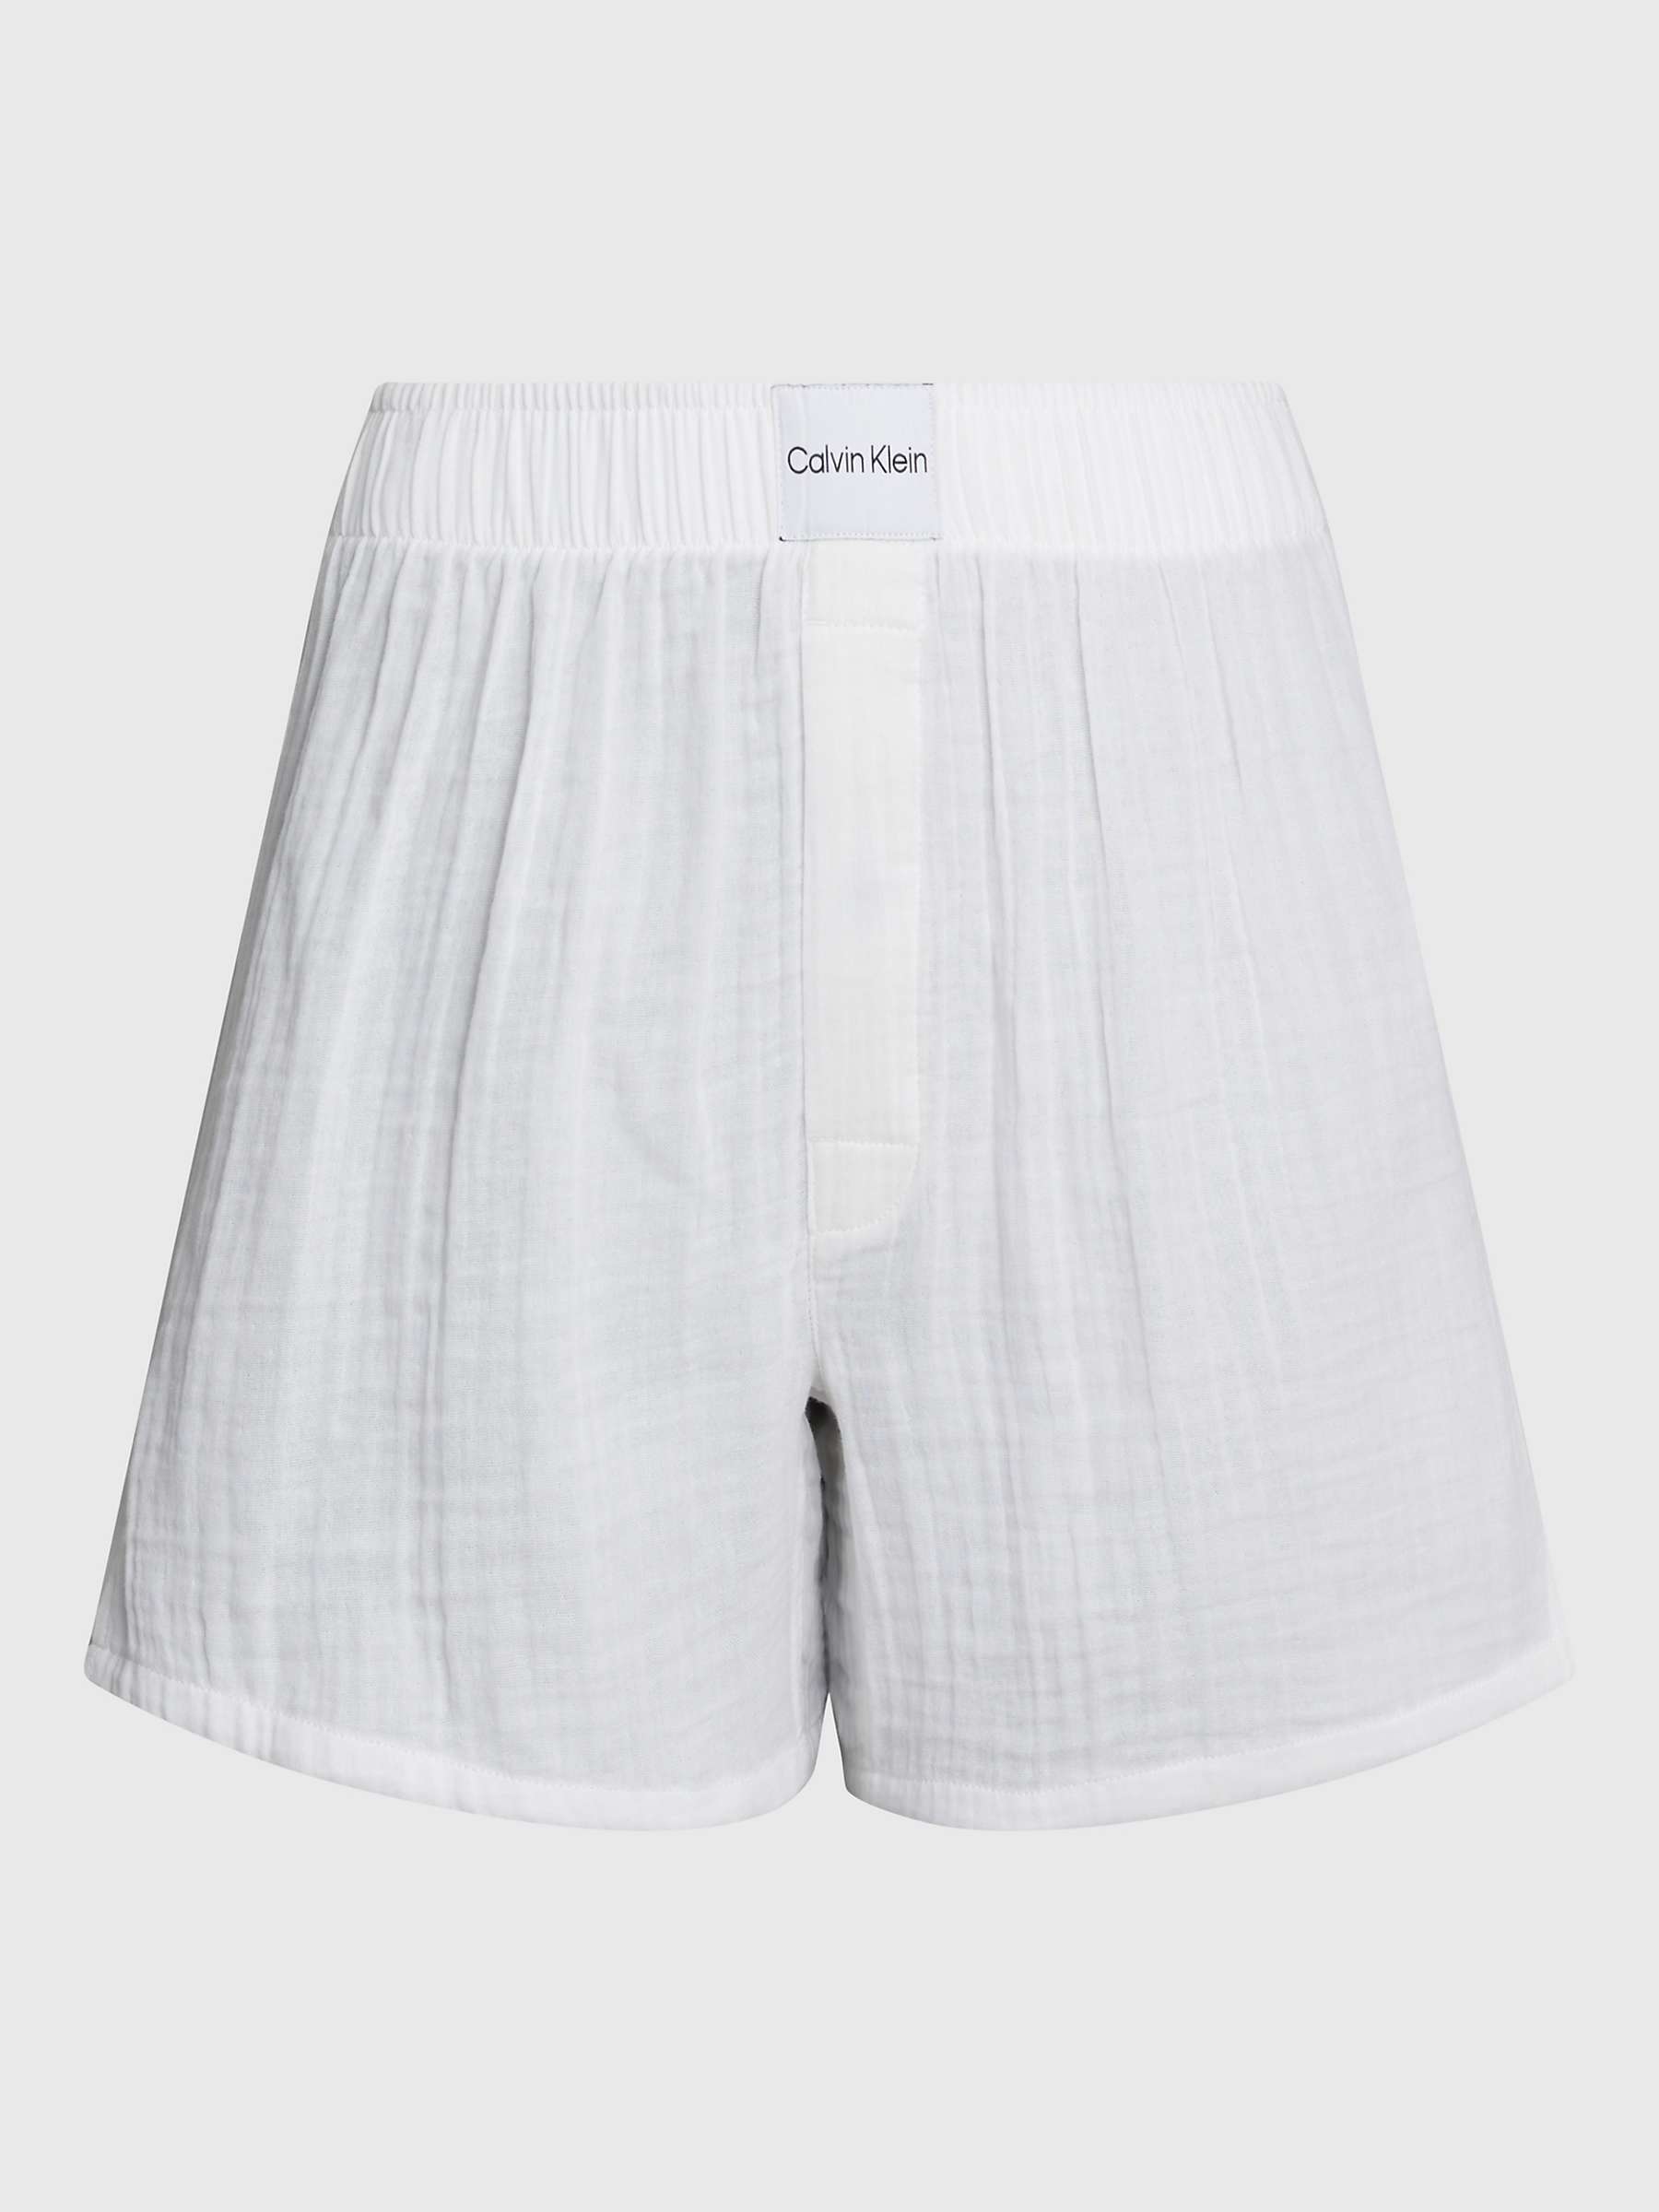 Buy Calvin Klein Boxer Slim Lounge Shorts, White Online at johnlewis.com